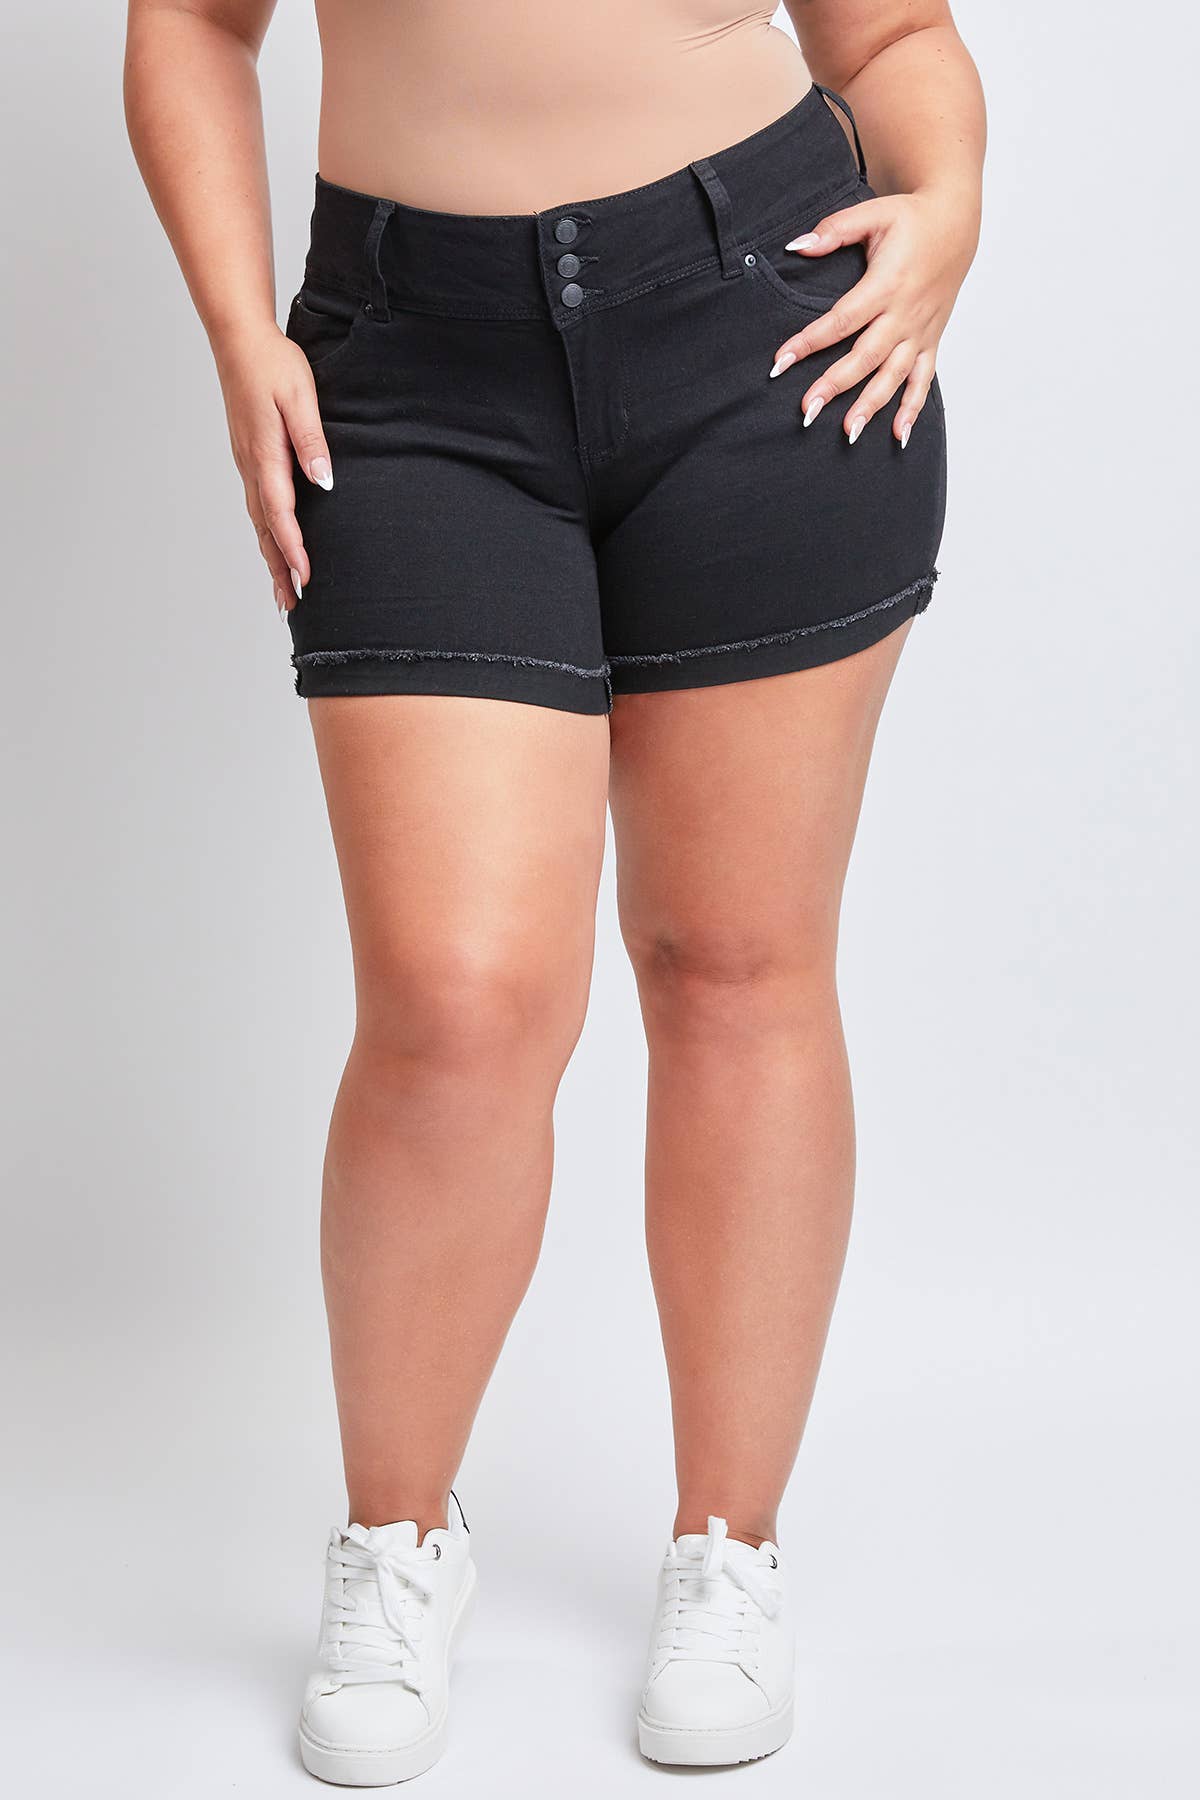 WannaBettaButt Black Cuffed Denim Shorts-Bottoms-Revive Boutique-14-Revive Boutique